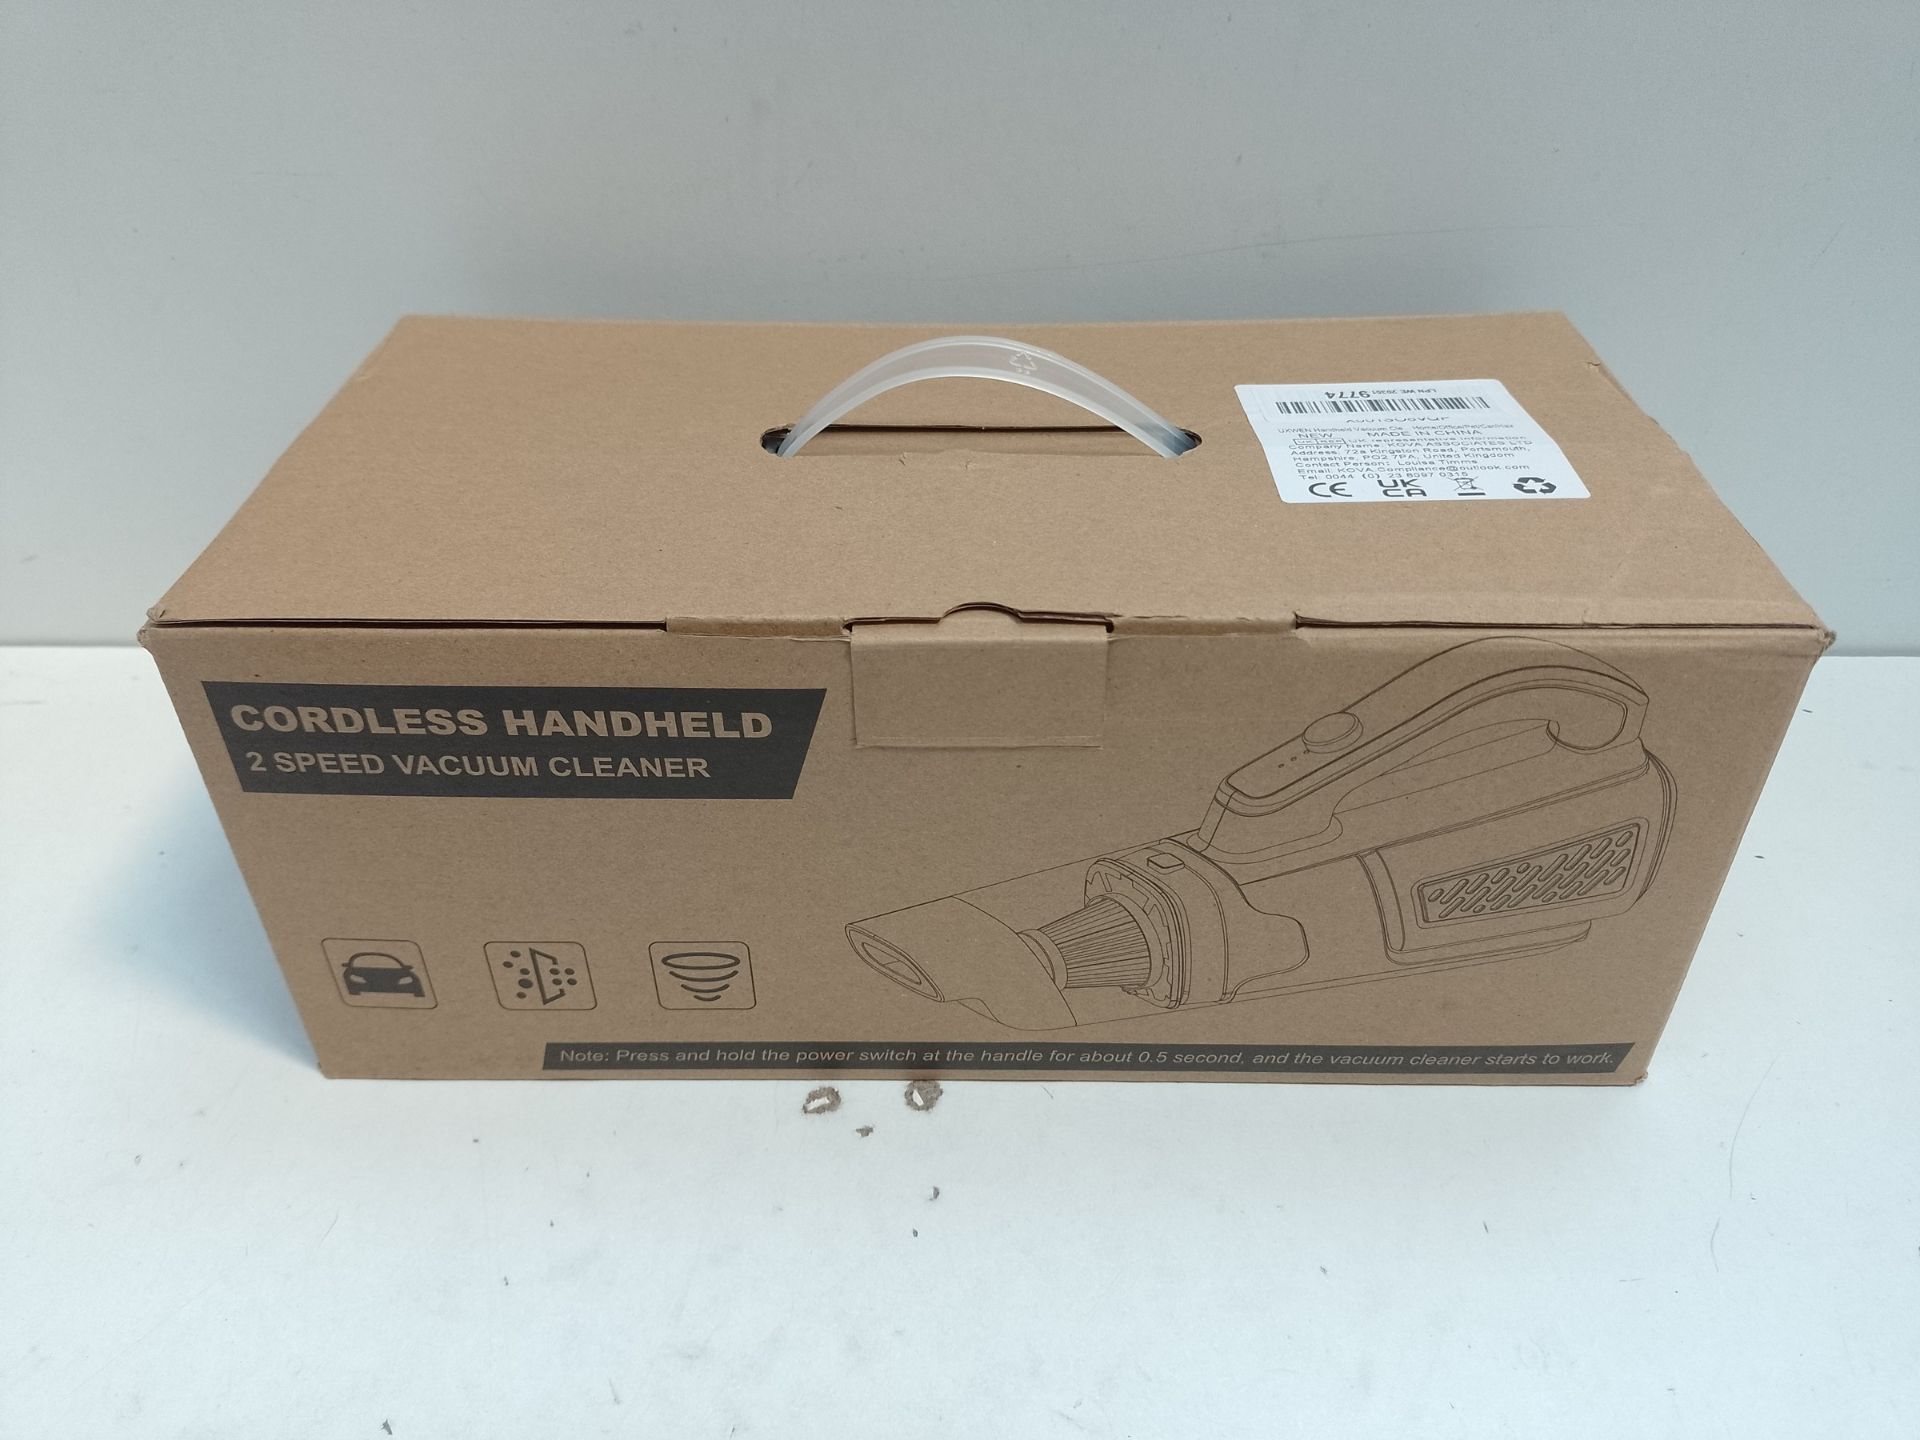 RRP £30.13 UXWEN Handheld Vacuum Cleaner - Image 2 of 2